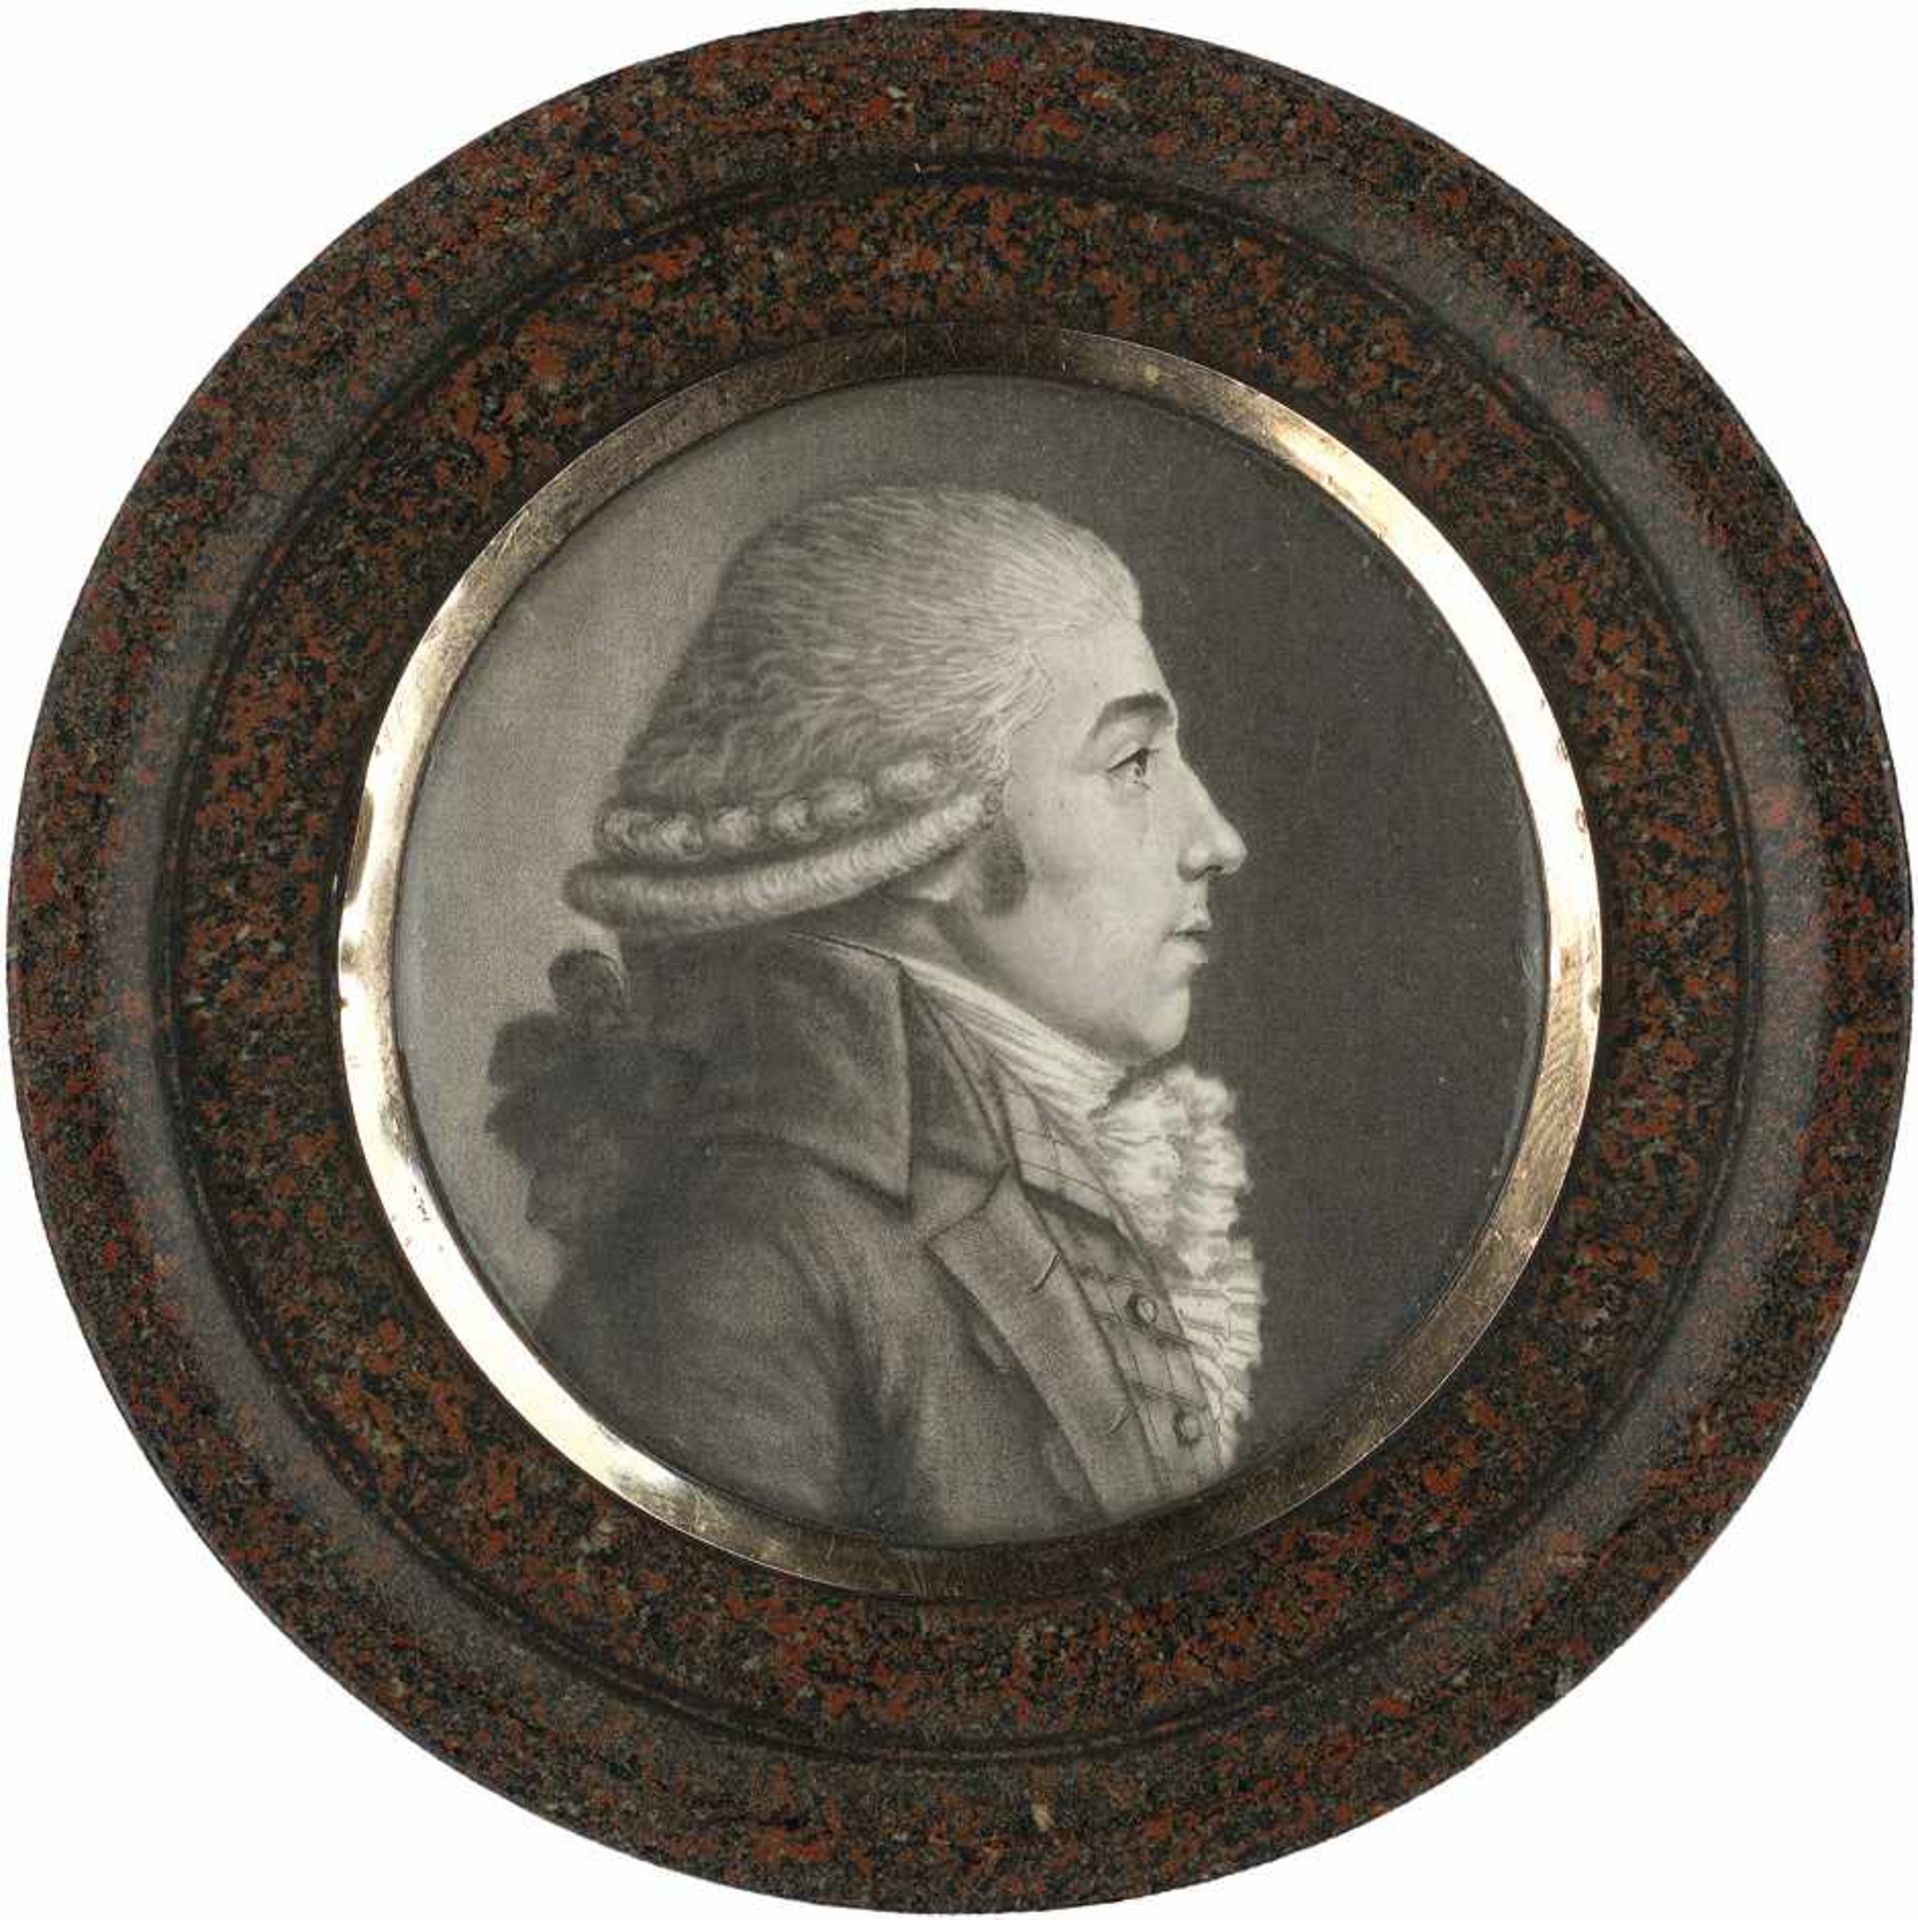 Chrétien, Gilles-Louis - zugeschrieben: Profilbildnis eines jungen Mannes nach rechts, auf "poudre